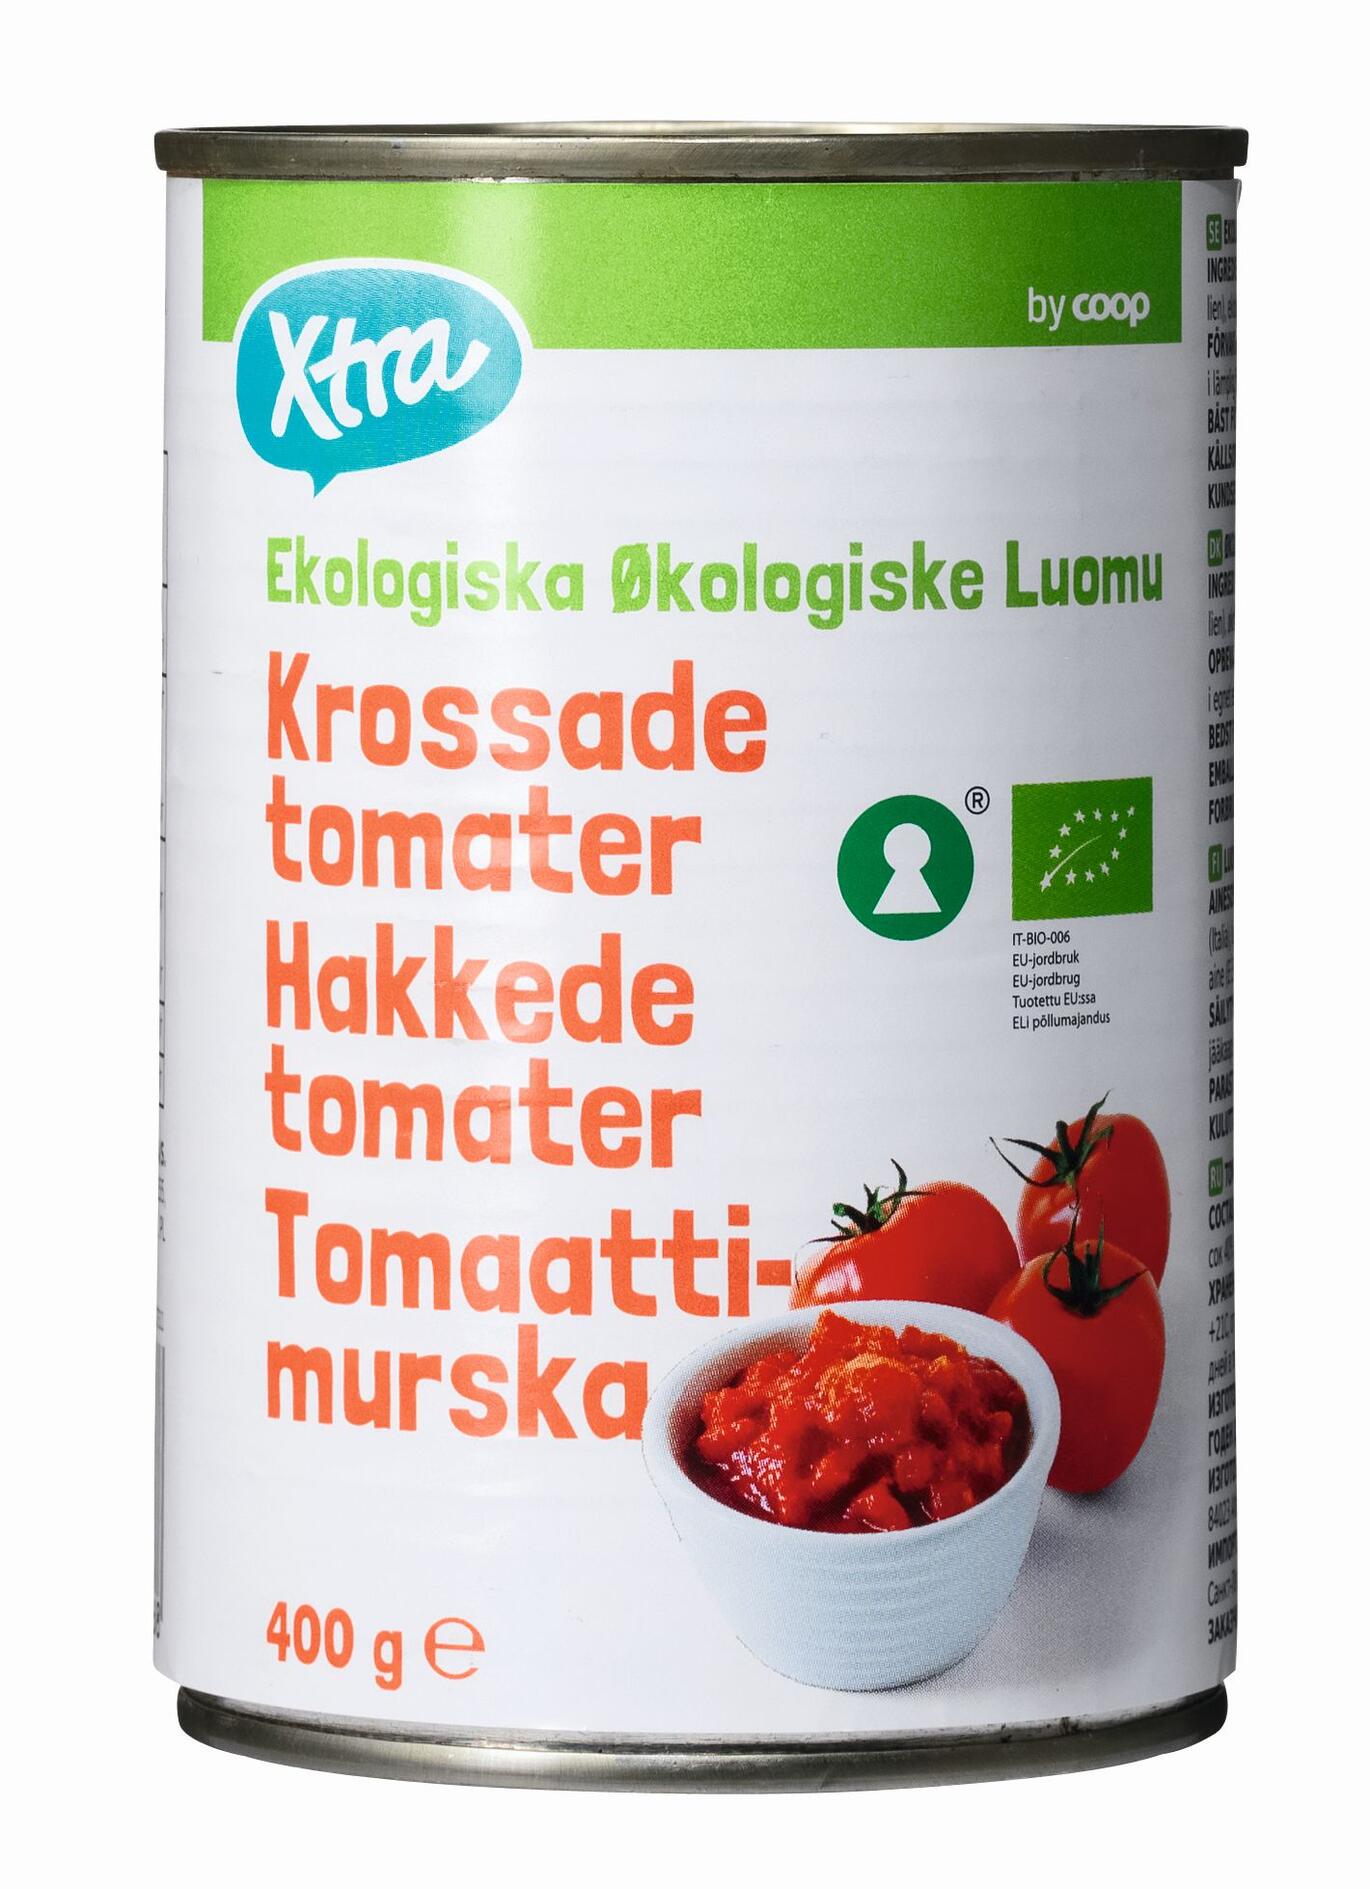 Økologiske hakkede tomater X-tra by COOP